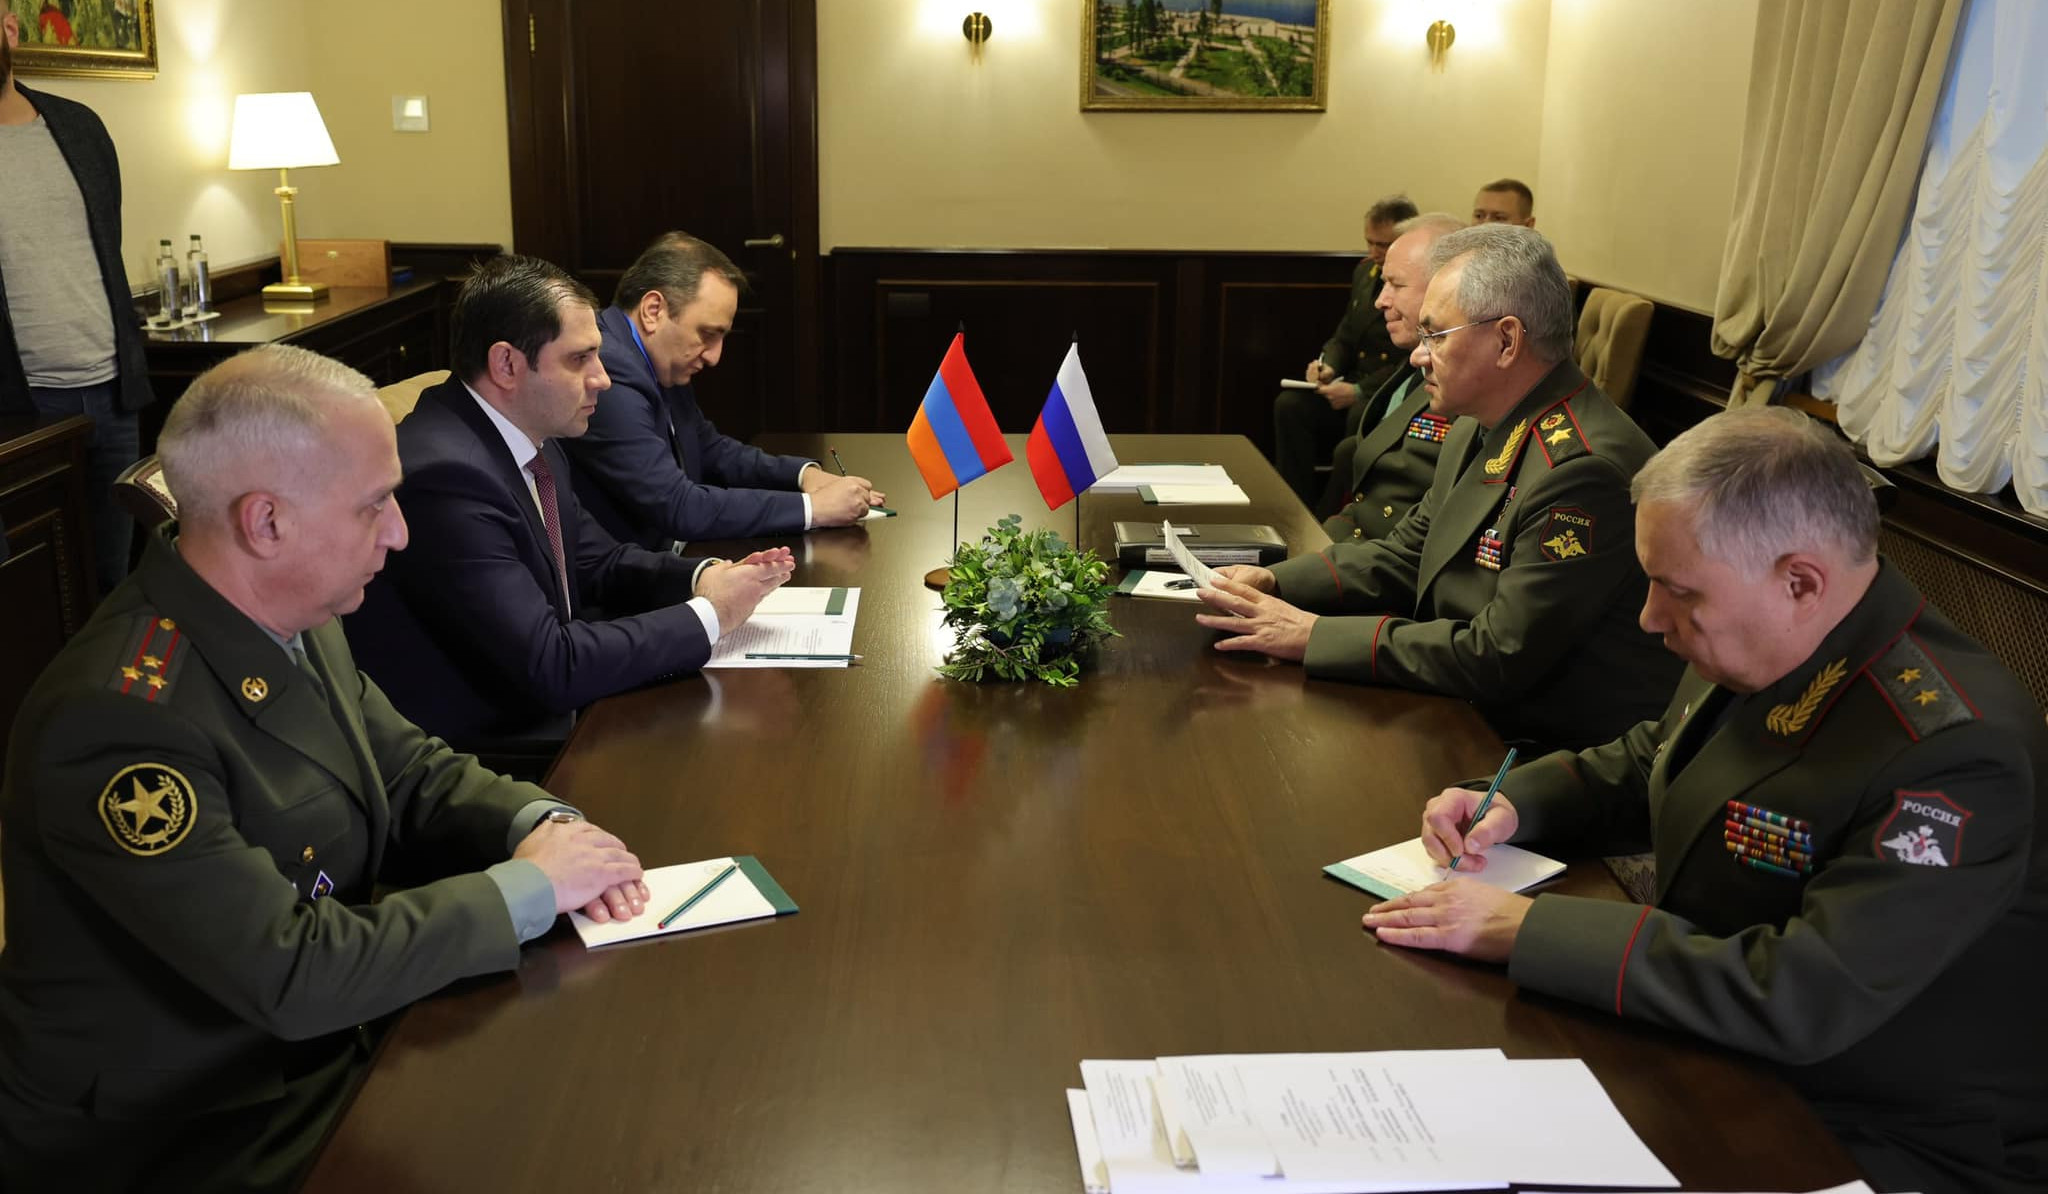 Министр обороны Армении на встрече глав МО стран ШОС и СНГ представил ситуацию, сложившуюся в регионе вследствие последней азербайджанской военной агрессии